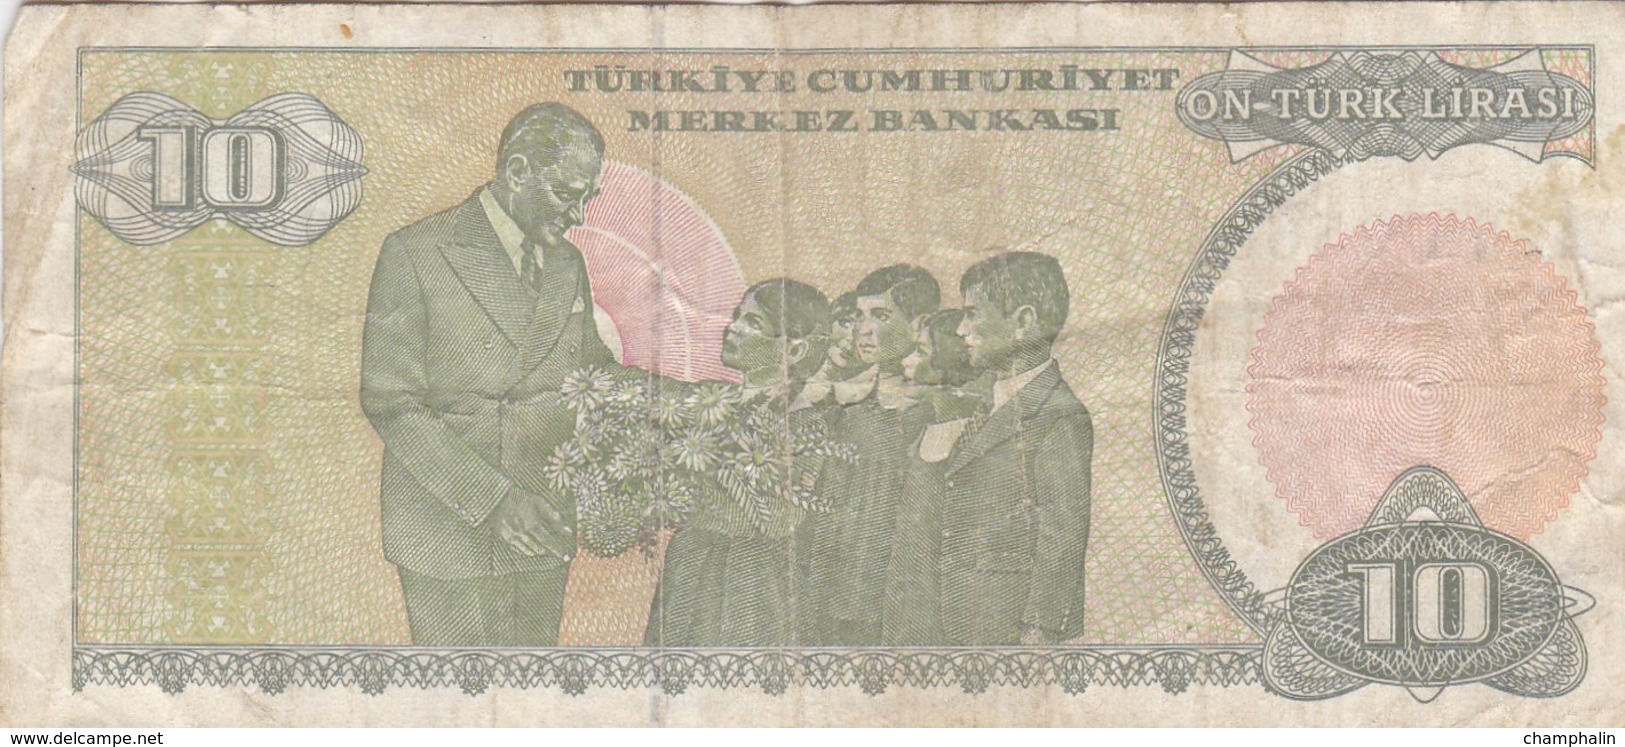 Turquie - Billet De 10 Lira - 14 Janvier 1970 - Turquie